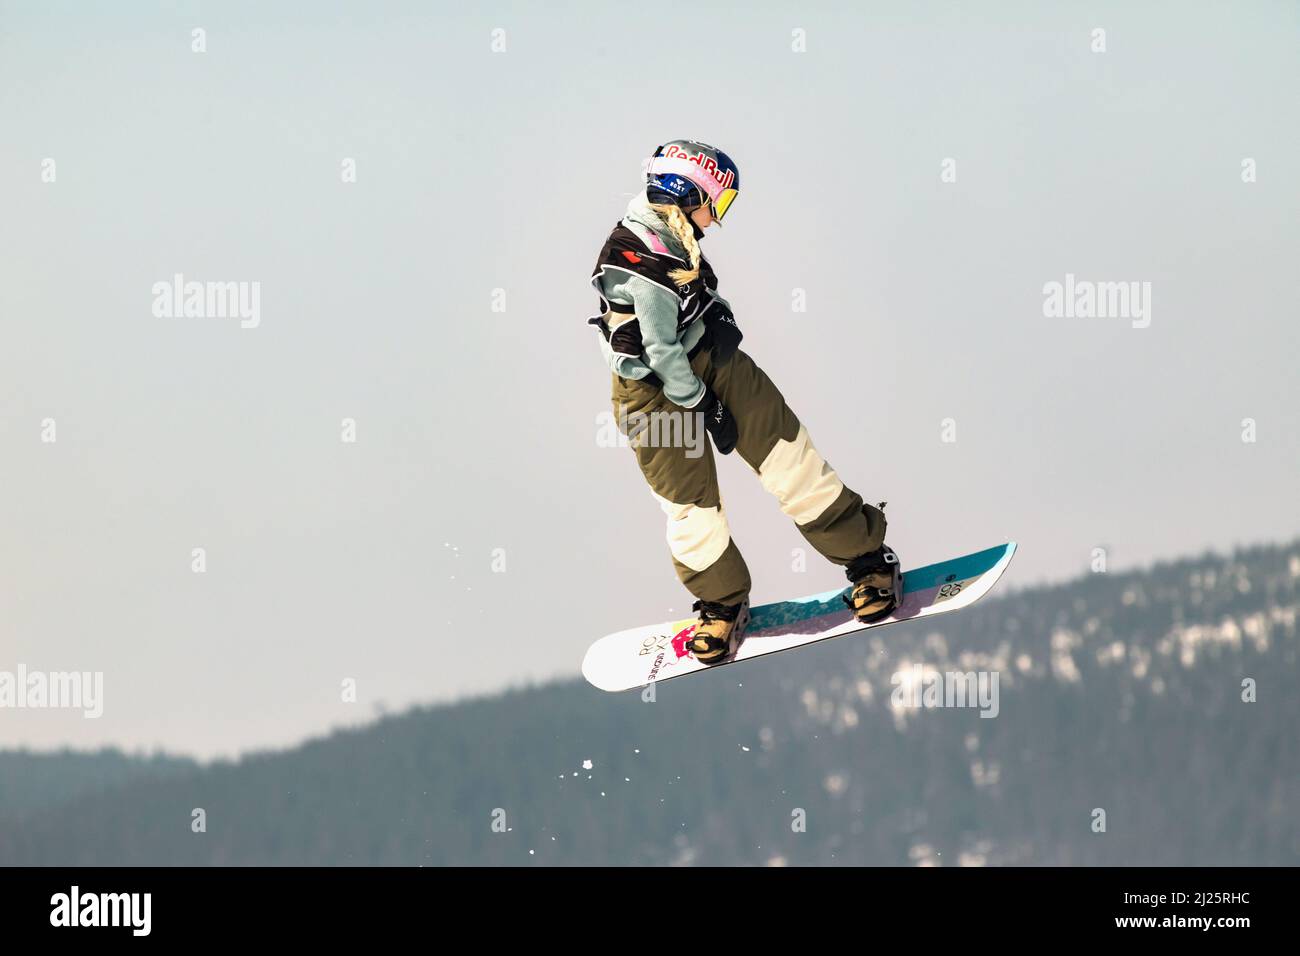 SPINDLERUV MLYN, REPUBBLICA CECA - 18th marzo. 2022: Snowboarder che salta contro il cielo blu. Snowboard. Un giovane snowboarder salta nello Spindleruv ml Foto Stock